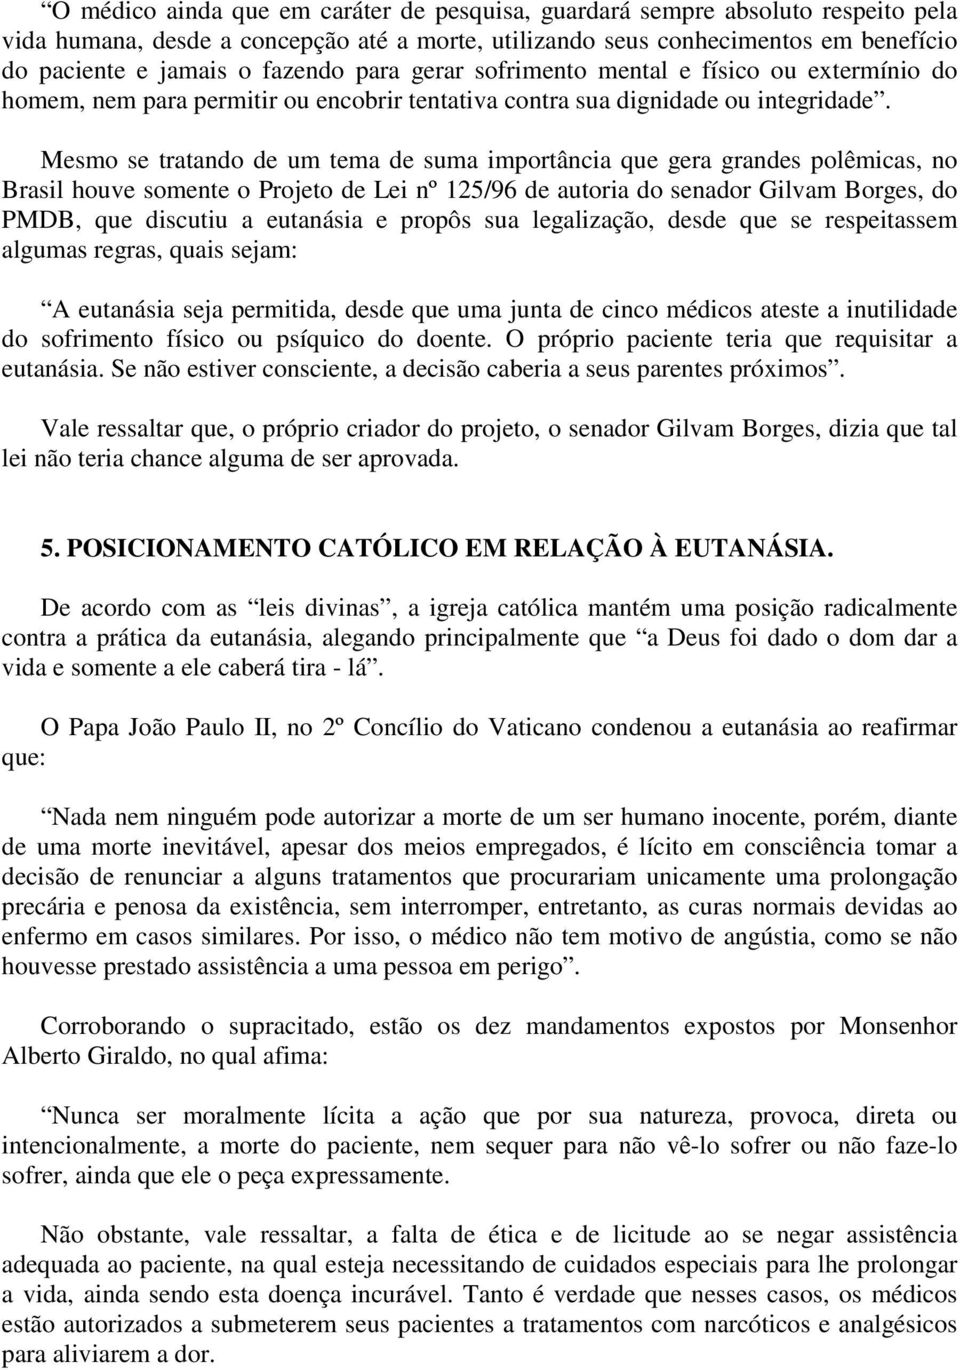 Mesmo se tratando de um tema de suma importância que gera grandes polêmicas, no Brasil houve somente o Projeto de Lei nº 125/96 de autoria do senador Gilvam Borges, do PMDB, que discutiu a eutanásia